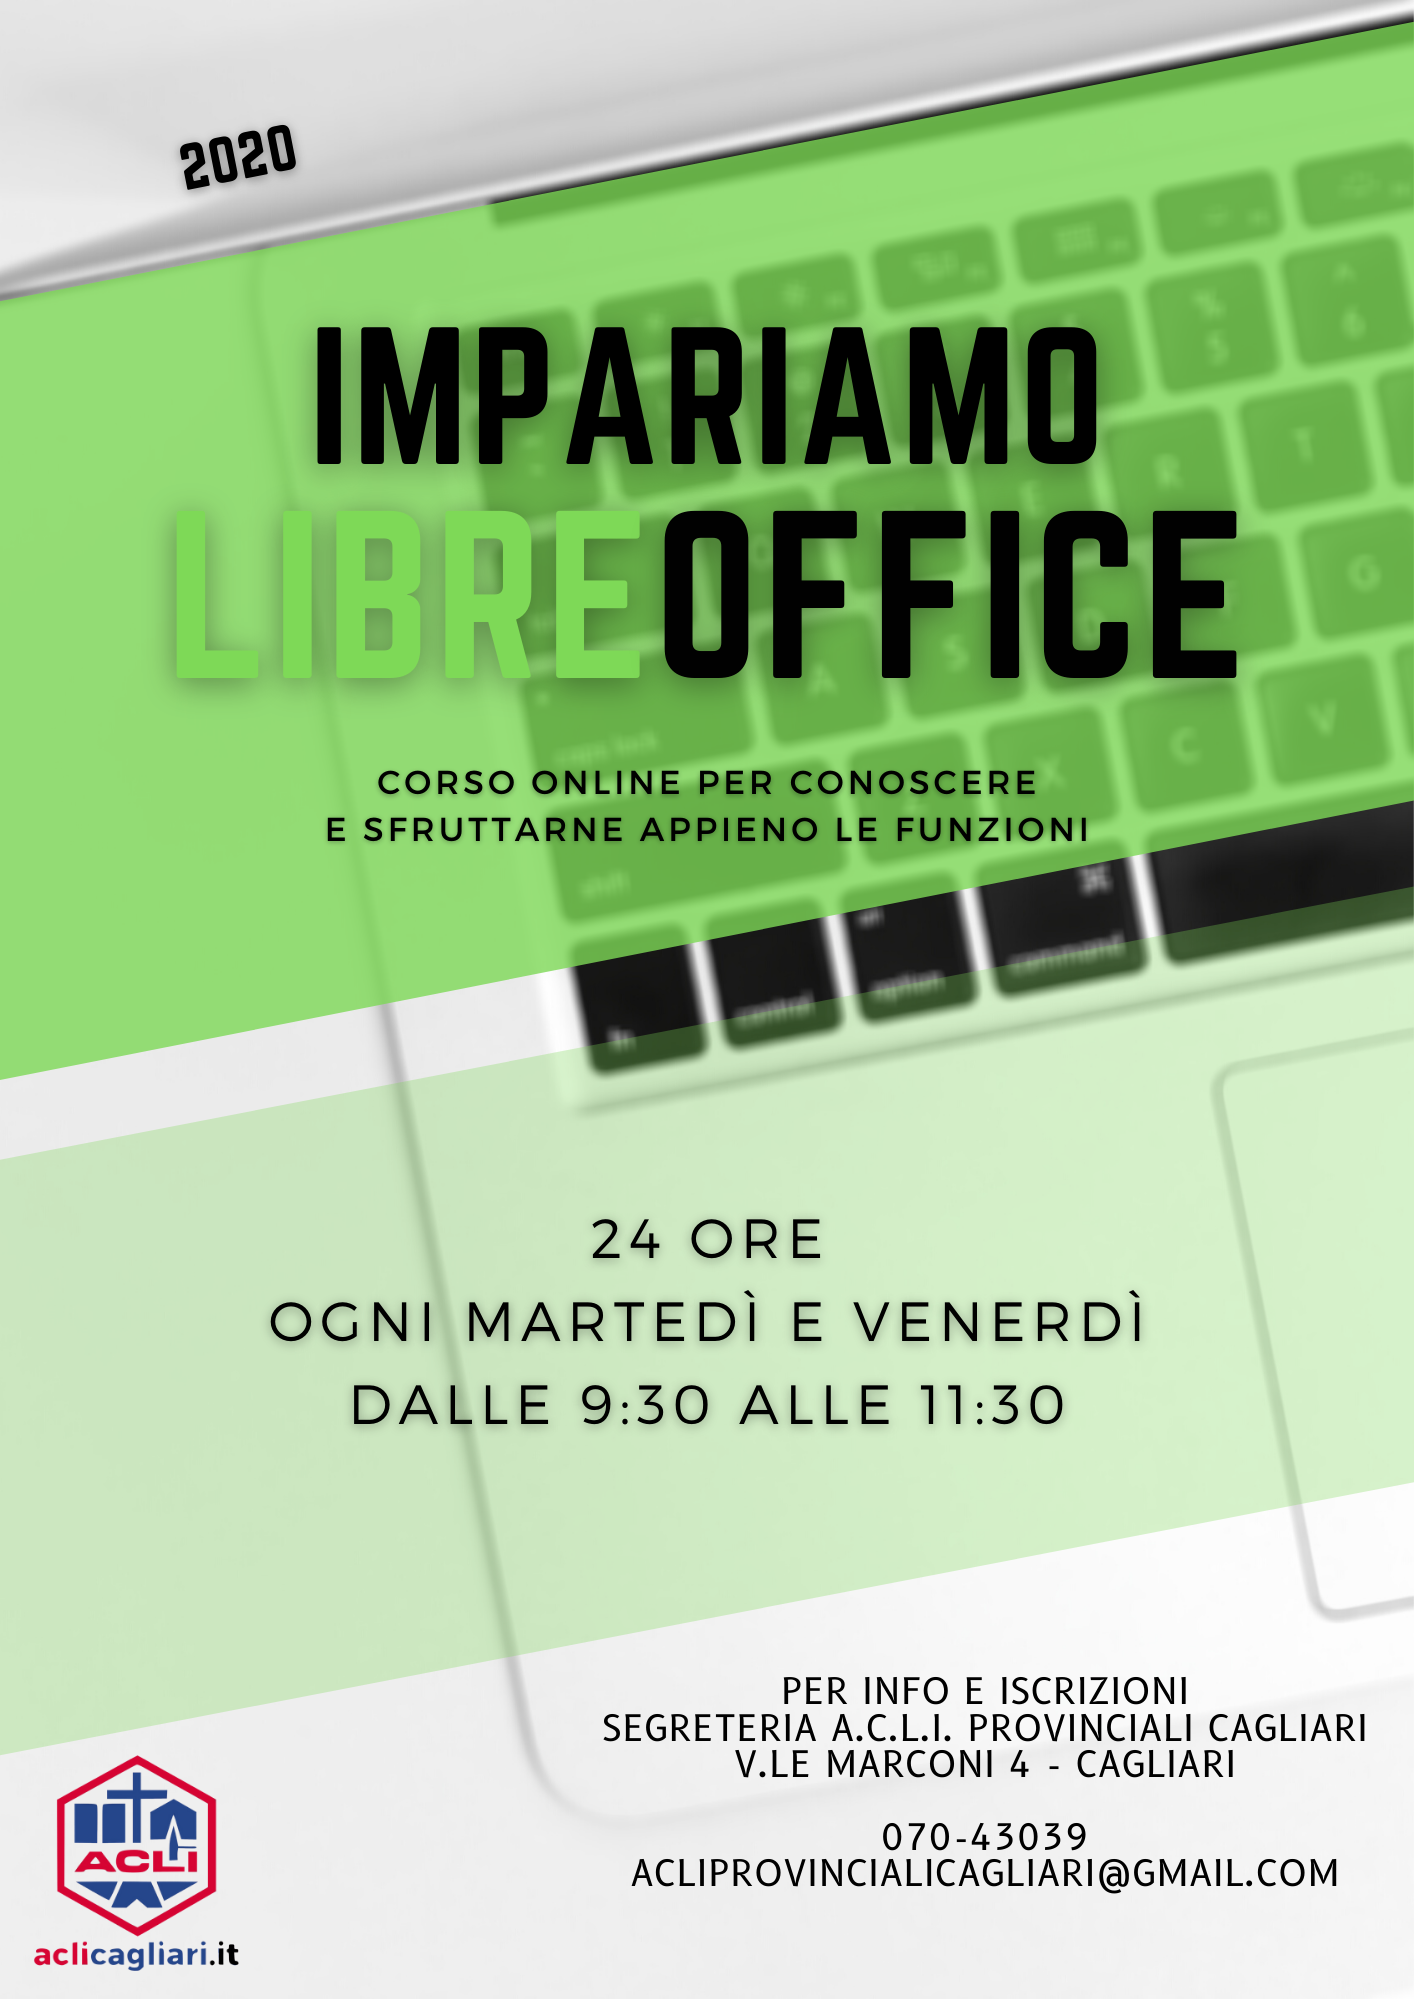 Impariamo Libre Office. Corso online suite per l'ufficio